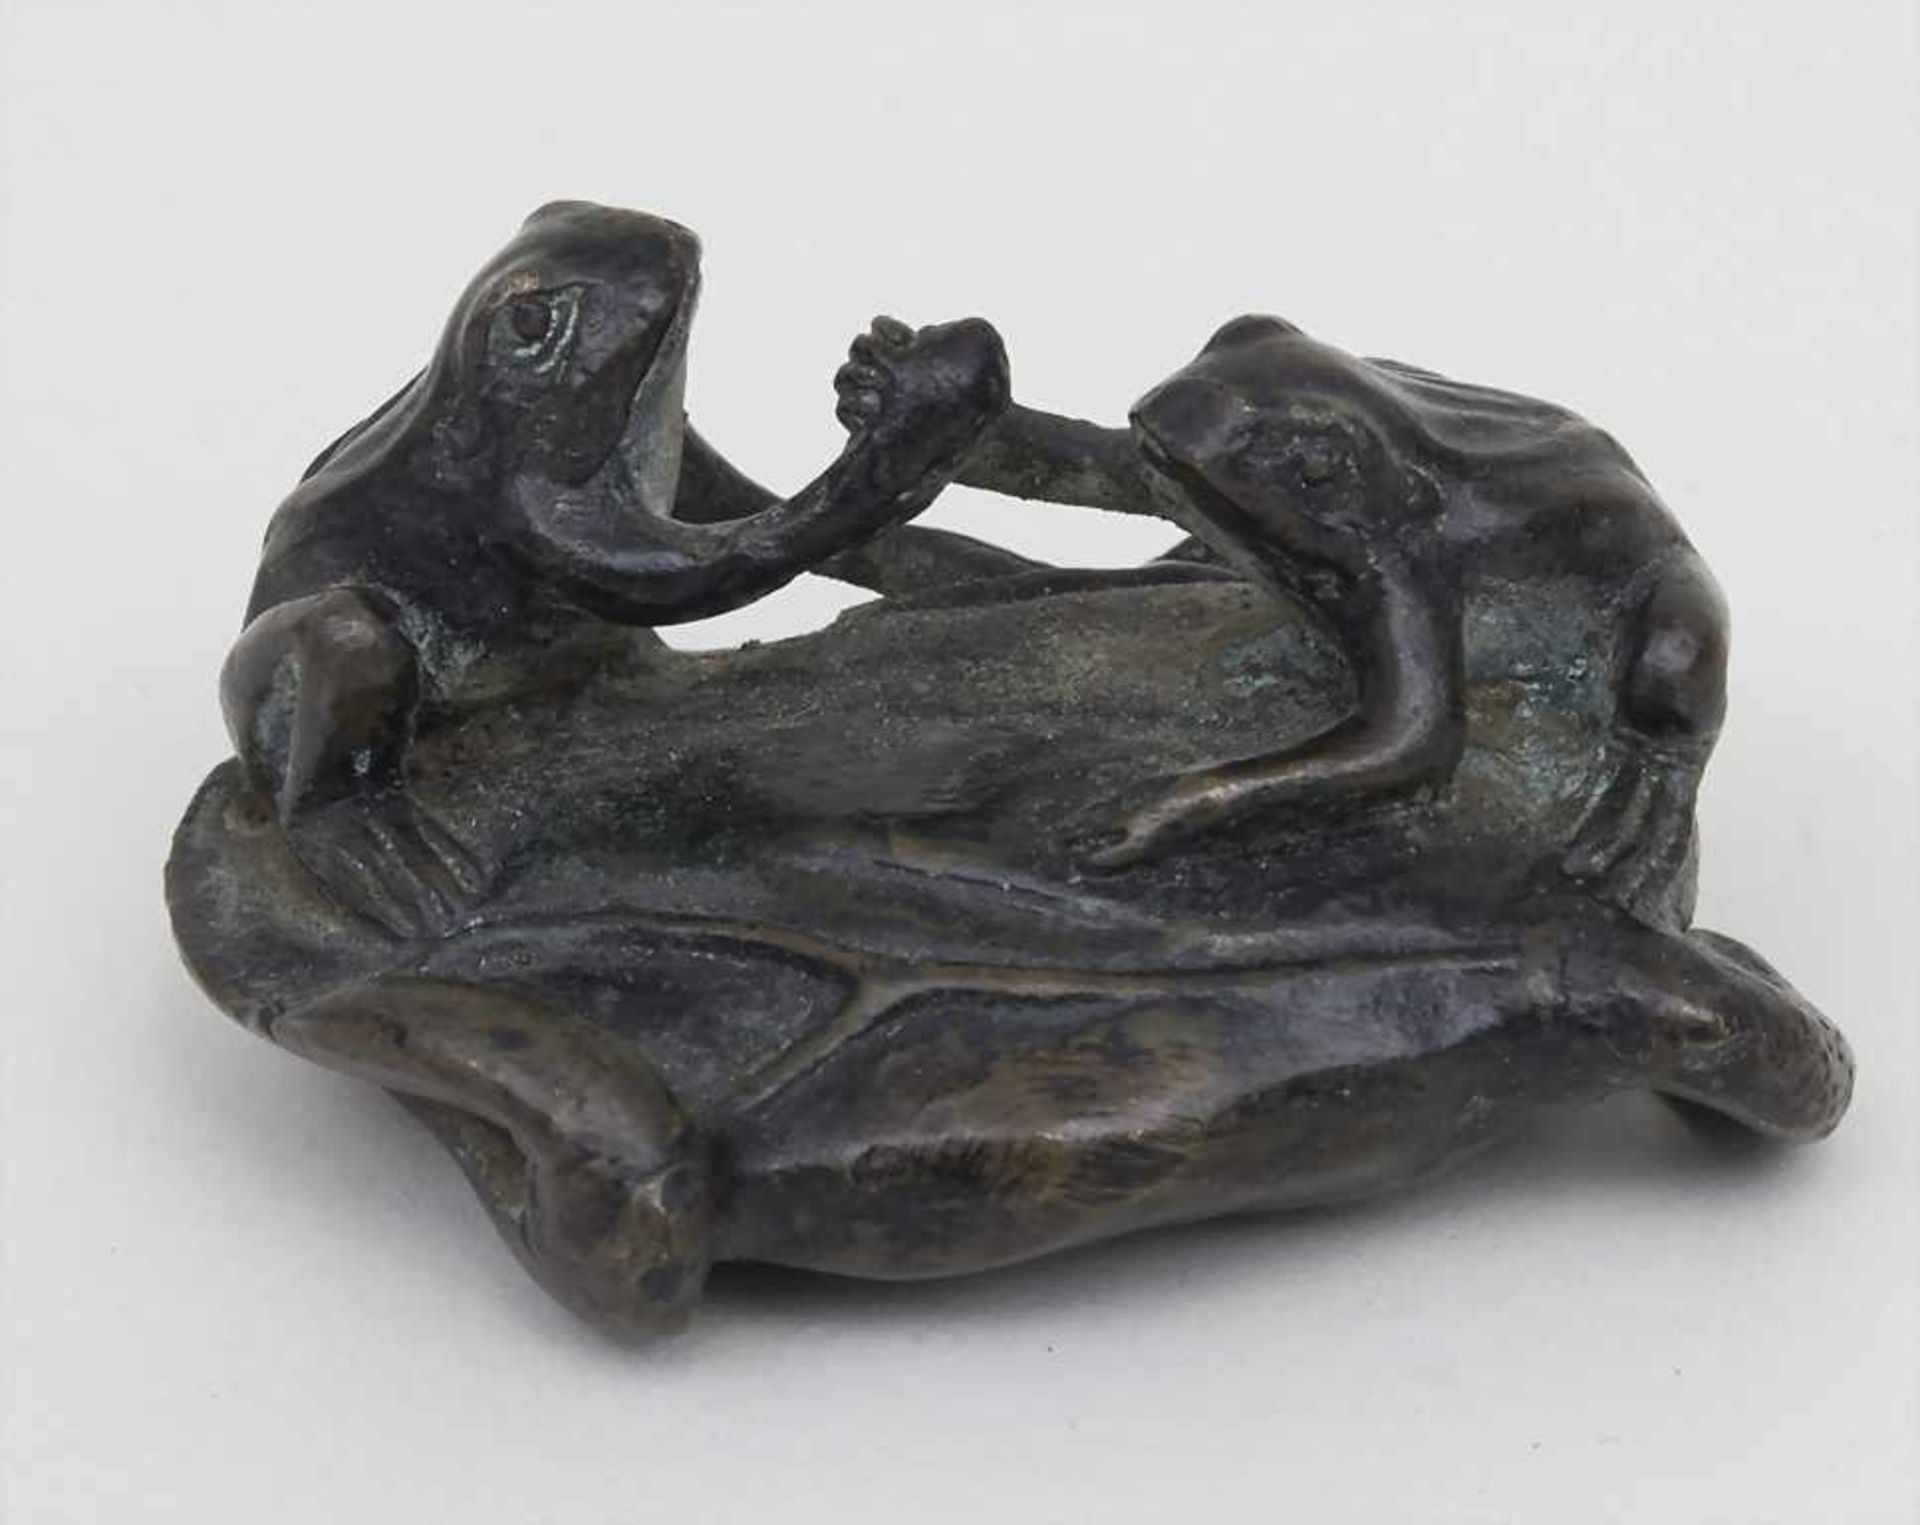 Kleinskulptur 'Frösche beim Armdrücken' / A small sculpture '2 frogs arm wrestling', Wiener Bronze